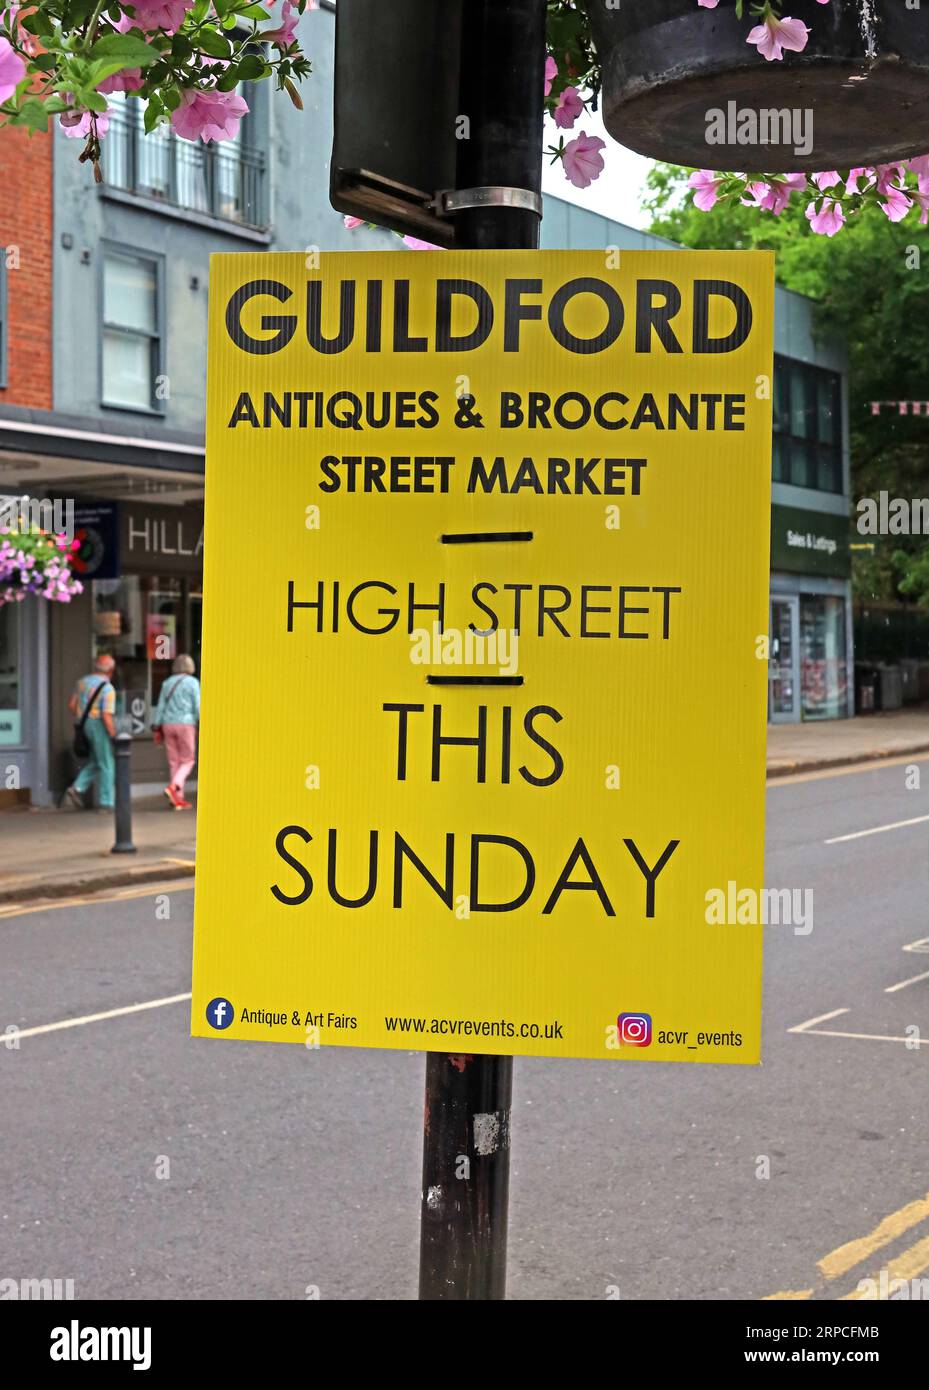 Cartello del mercato di antiquariato e brocante di Guildford, High Street This Sunday, Surrey, Inghilterra, Regno Unito, GU1 3YL Foto Stock